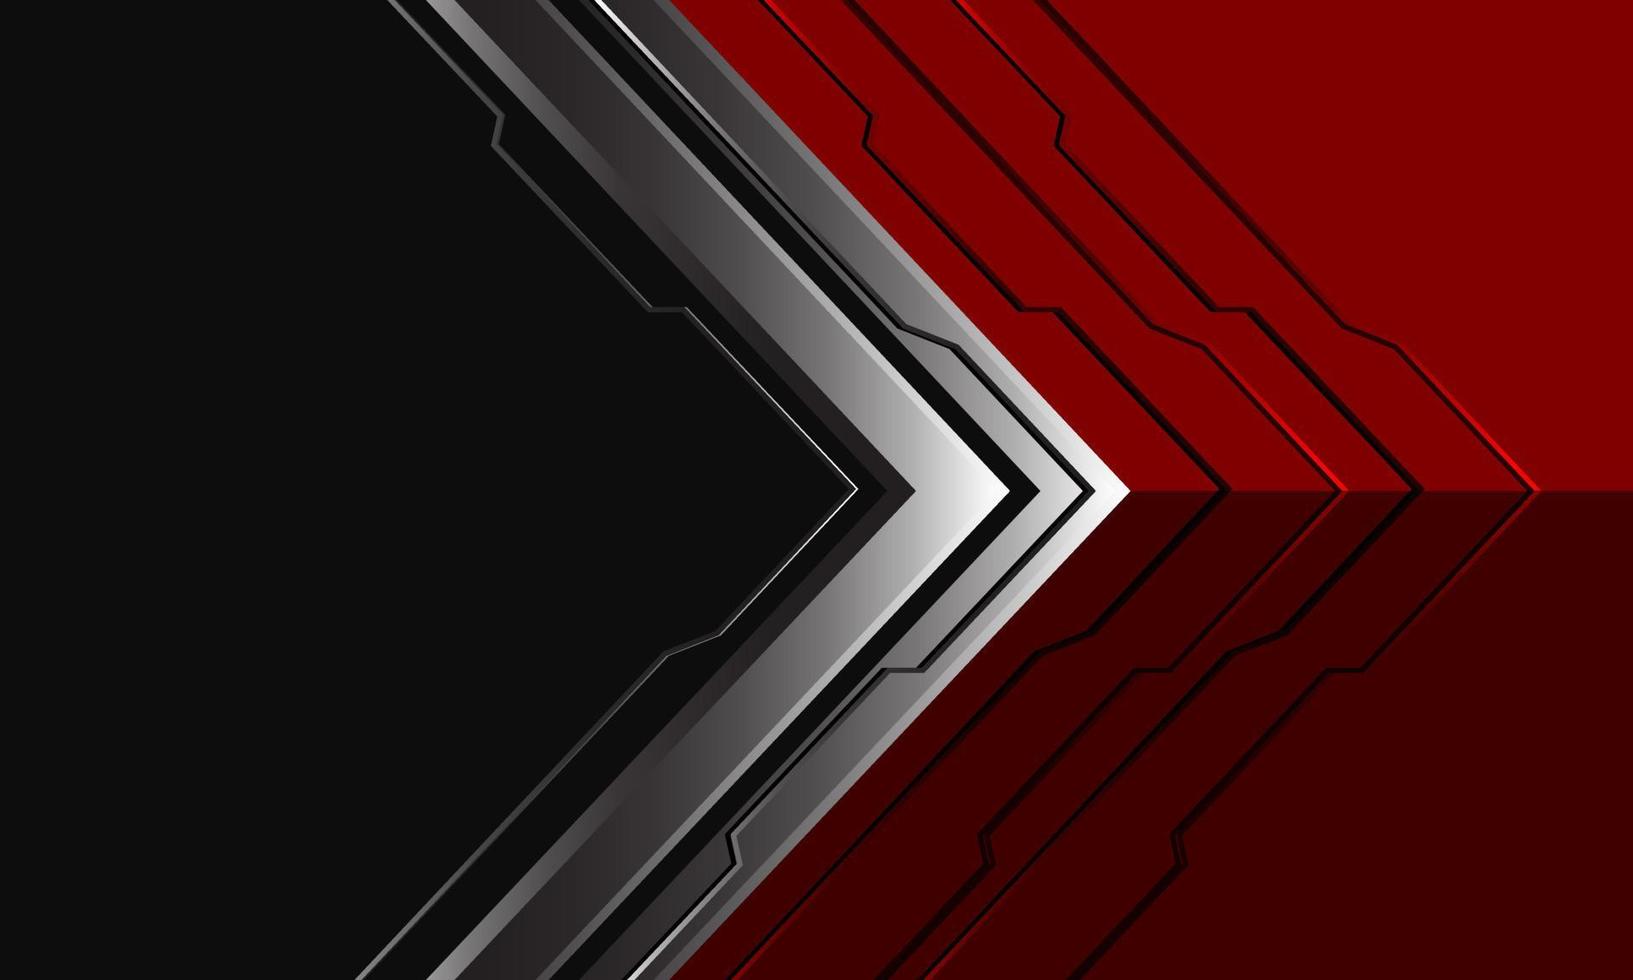 flèche argentée abstraite cyber direction géométrique sur rouge avec espace vide gris foncé conception technologie moderne vecteur de fond futuriste